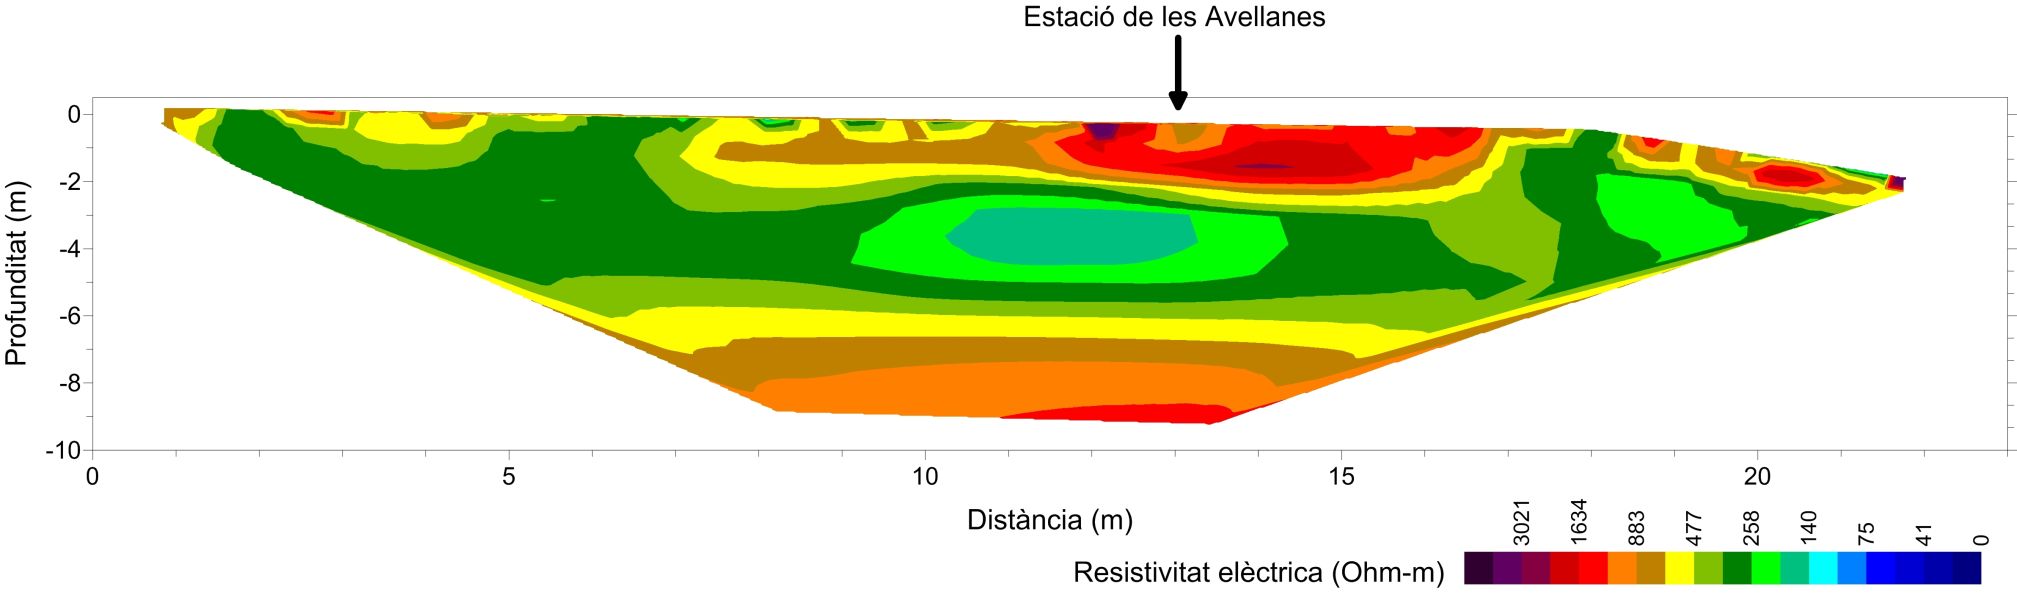 Model superficial de resistivitat elèctrica amb la ubicació del pou sísmic de Les Avellanes.